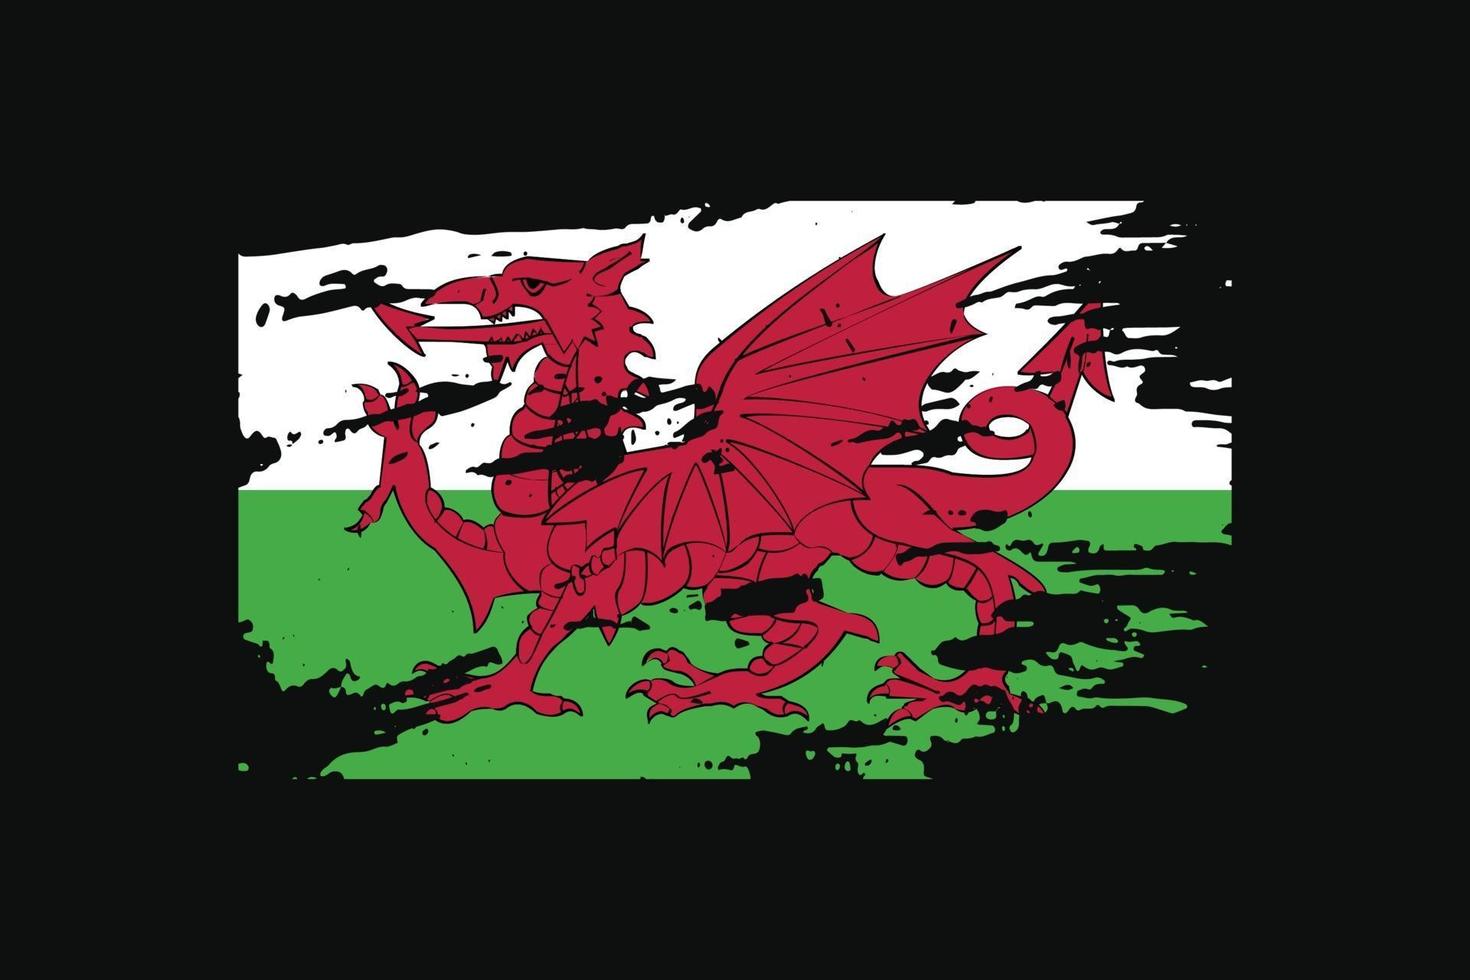 drapeau de style grunge du pays de Galles. illustration vectorielle. vecteur